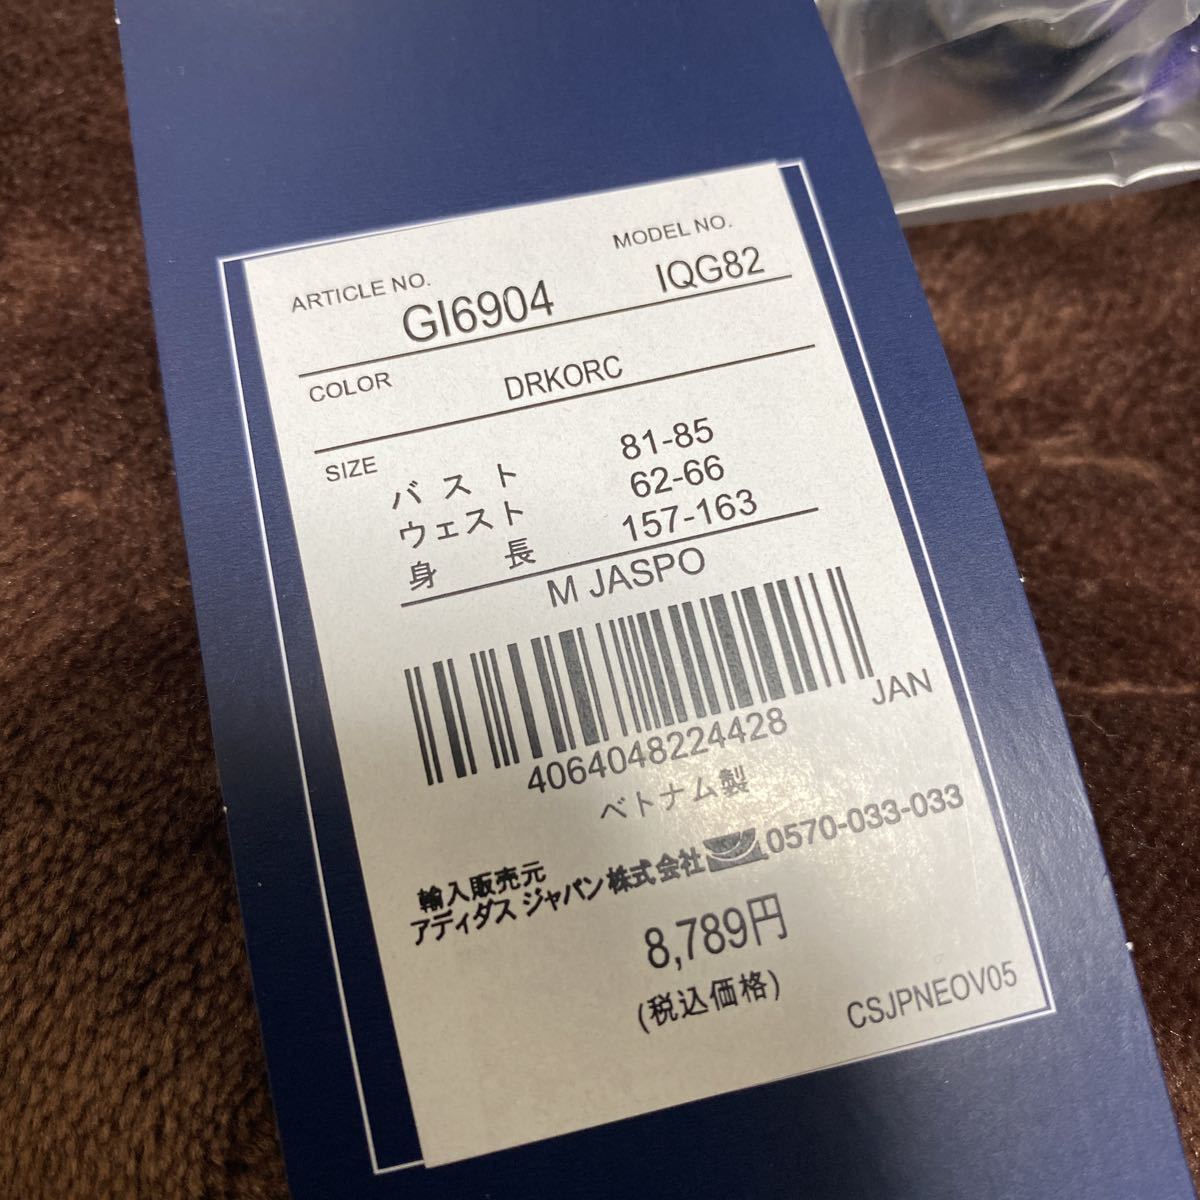  новый товар обычная цена 8789 иен Reebok to Lux -tsu джерси верх и низ выставить M размер GI8789 лиловый x белый 